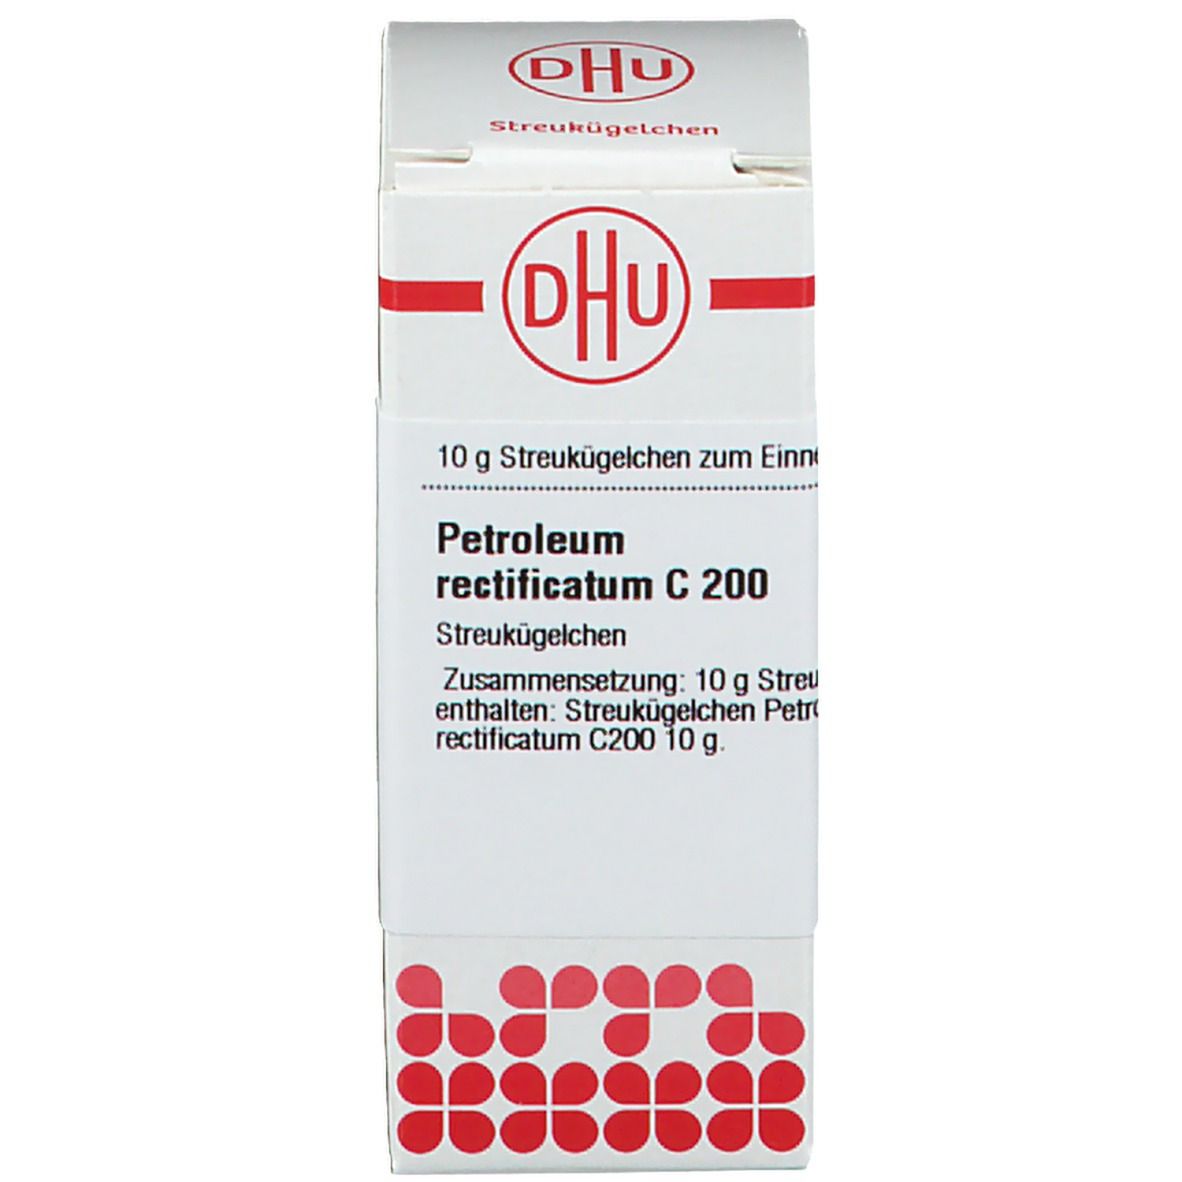 DHU Petroleum Rectificatum C200